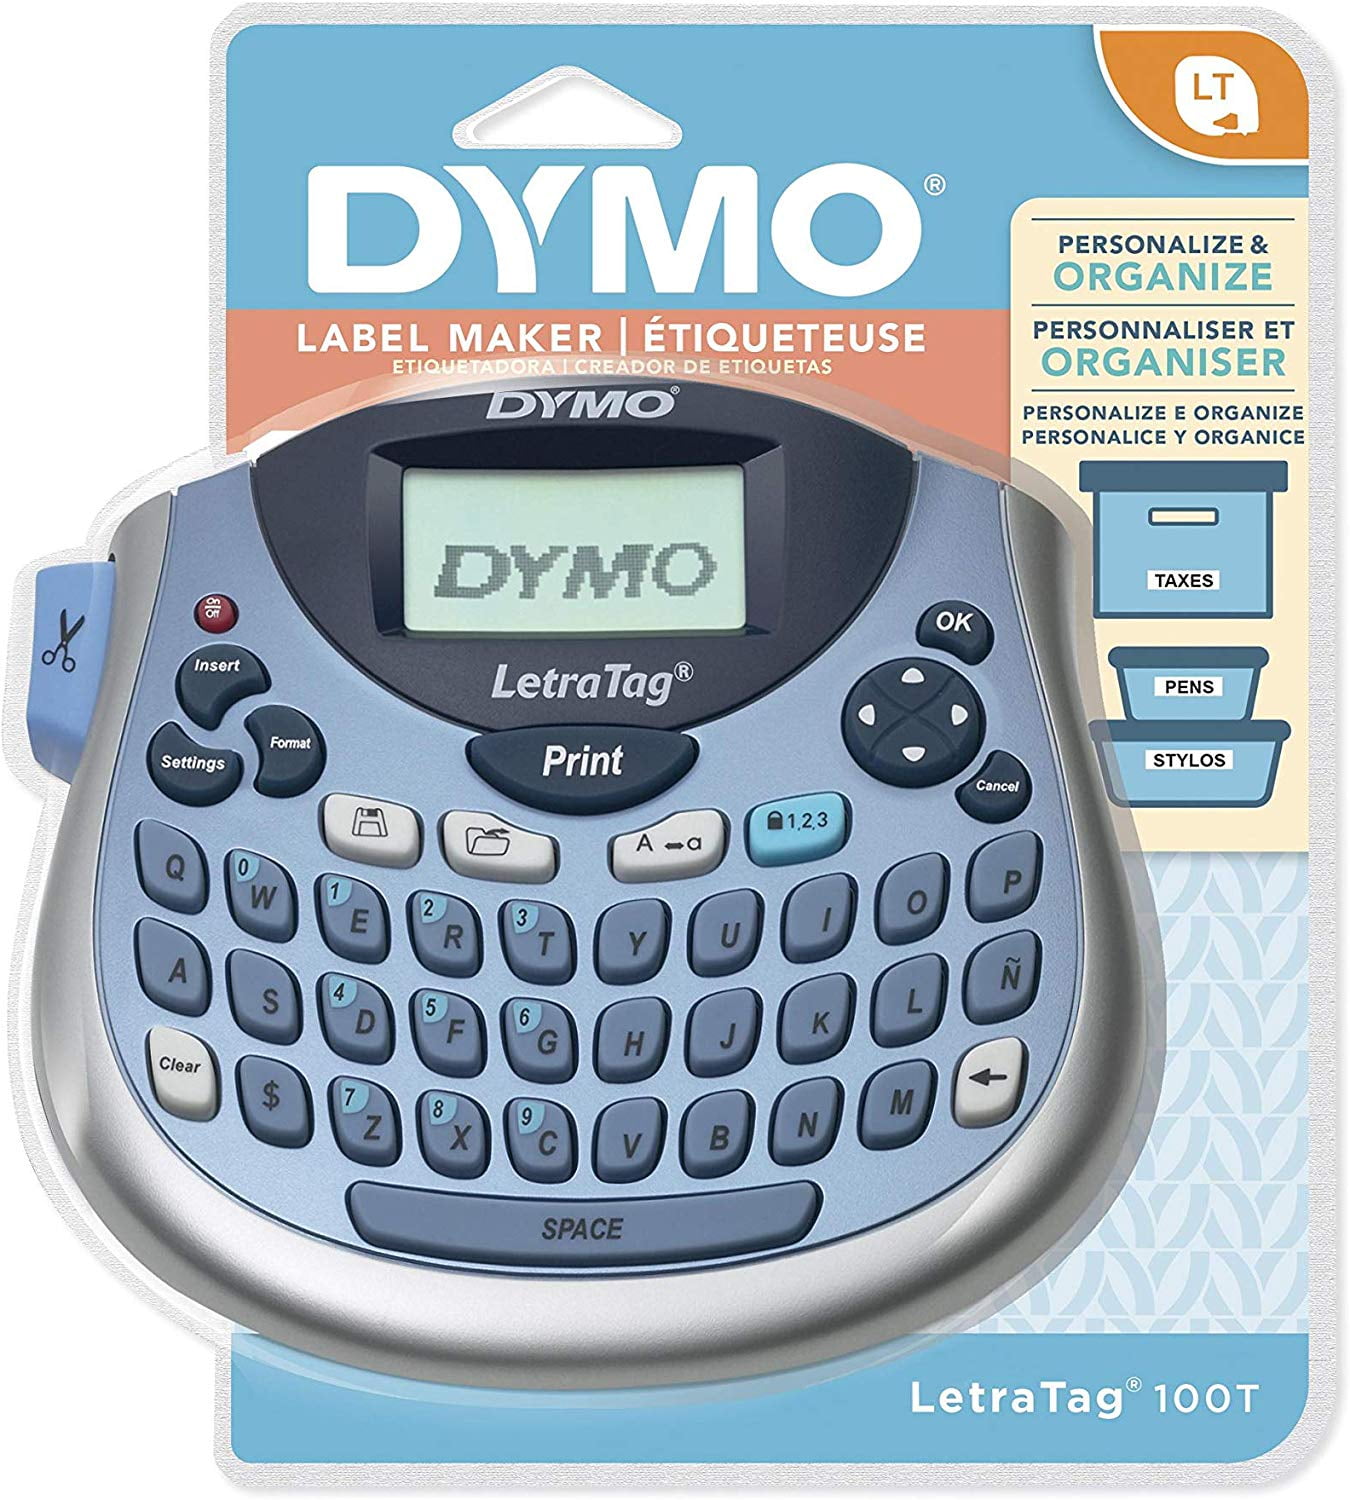 Dymo Letratag Plus LT-100H Label Maker for sale online 